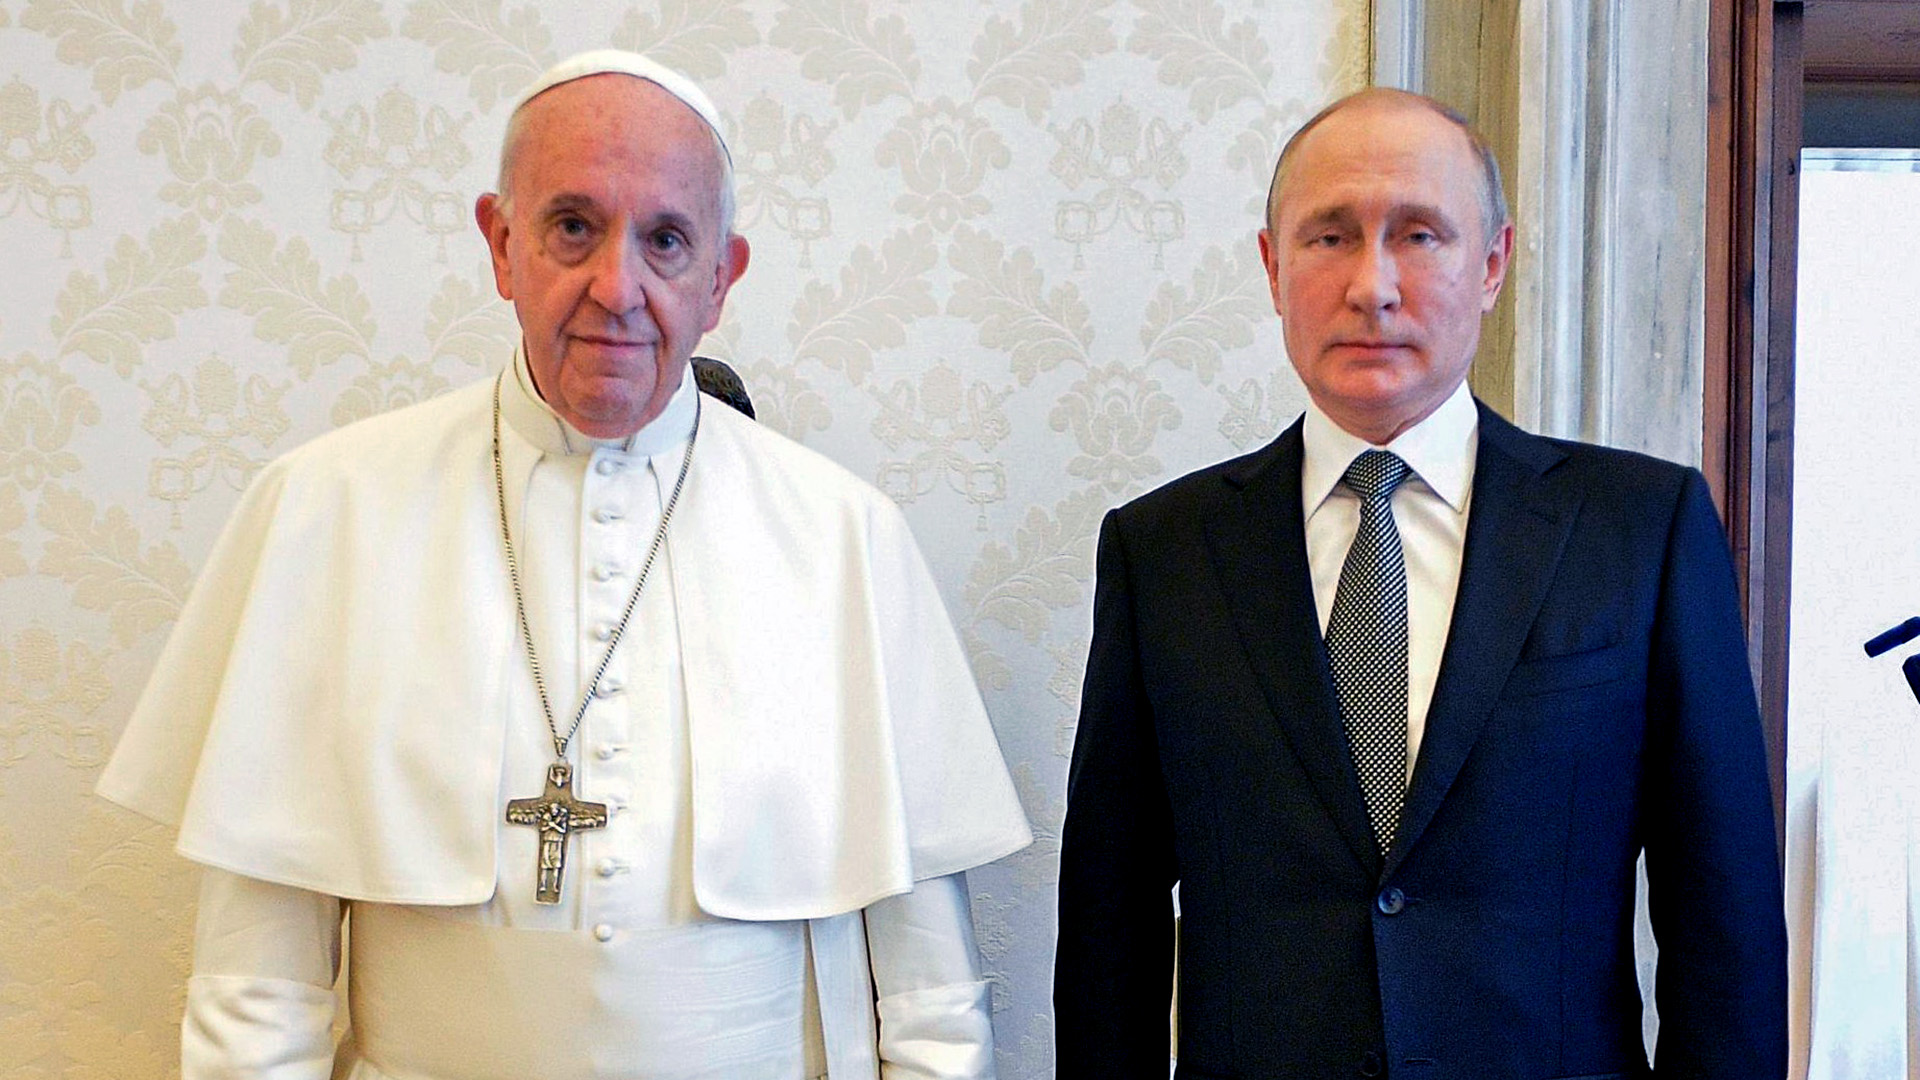 Putin ha visitado al Papa en el Vaticano, pero ahora Francisco se ha distanciado por la invasión a Ucrania (Reuters)